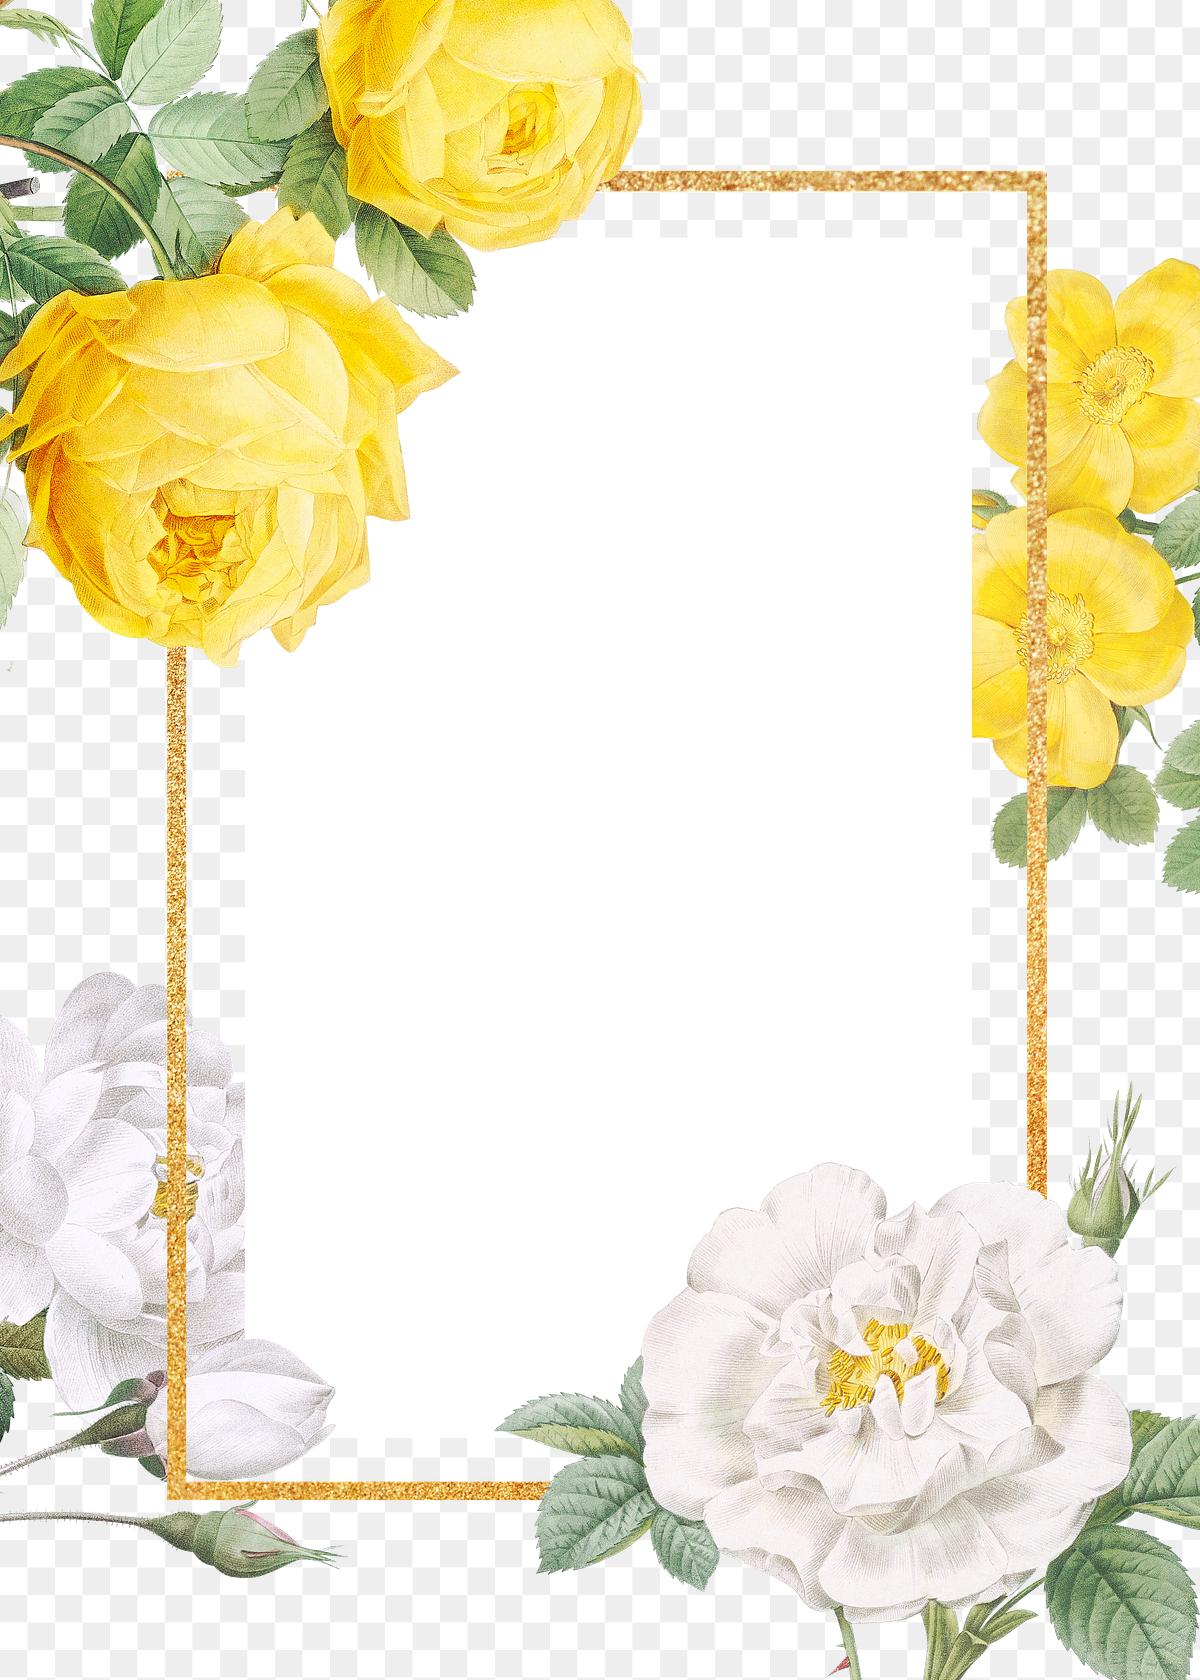 Download Floral design wedding invitation mockup | Free transparent png - 581090